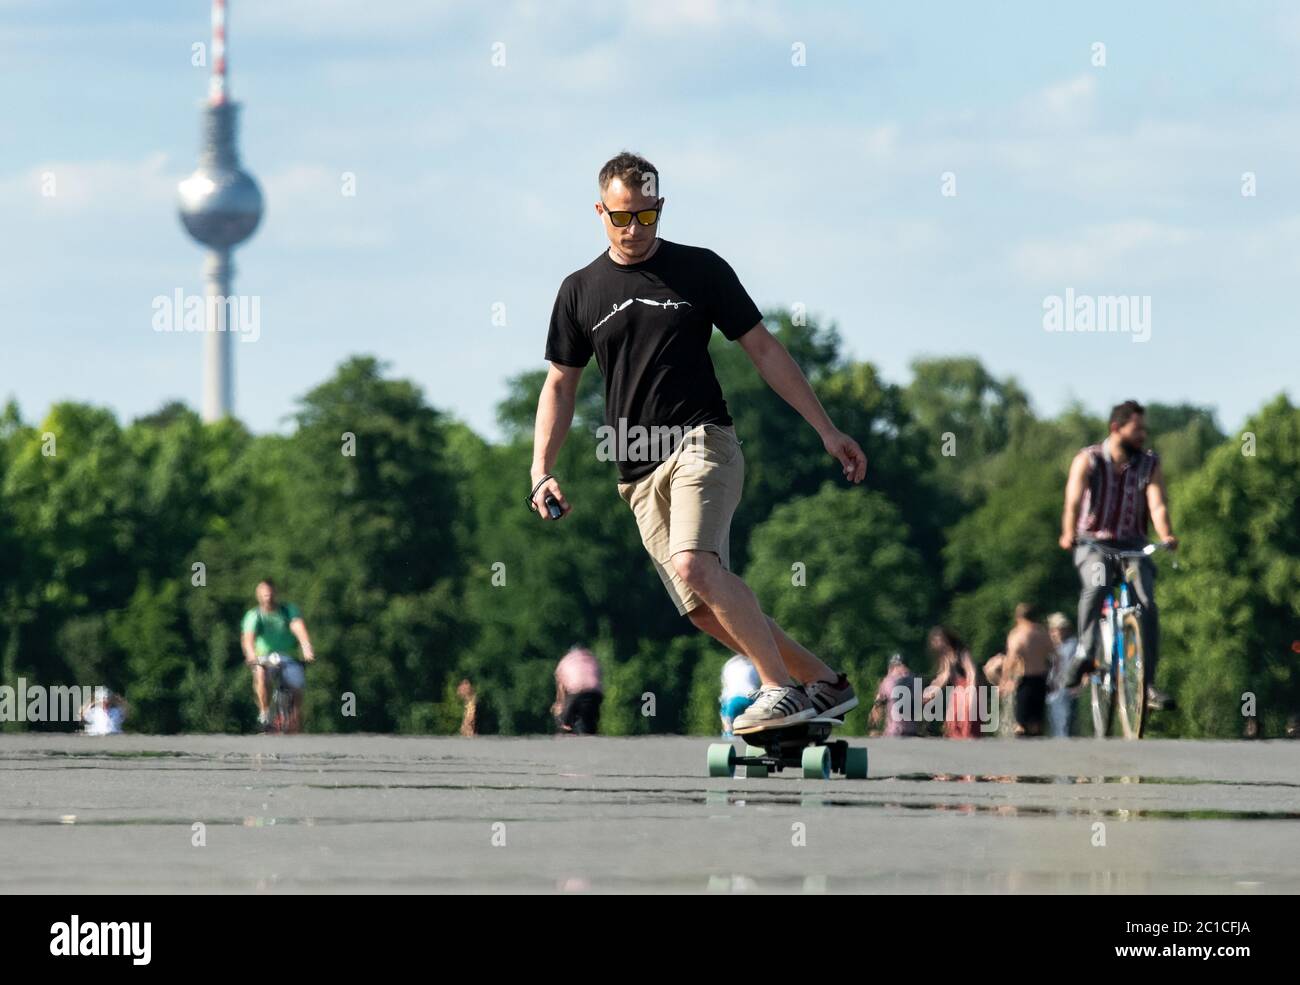 Berlin, Deutschland. Juni 2020. Ozan aus Berlin fährt auf einem E-Skateboard  auf dem Tempelhofer Feld. Im Hintergrund sieht man den Fernsehturm. Quelle:  Bernd von Jutrczenka/dpa/Alamy Live News Stockfotografie - Alamy